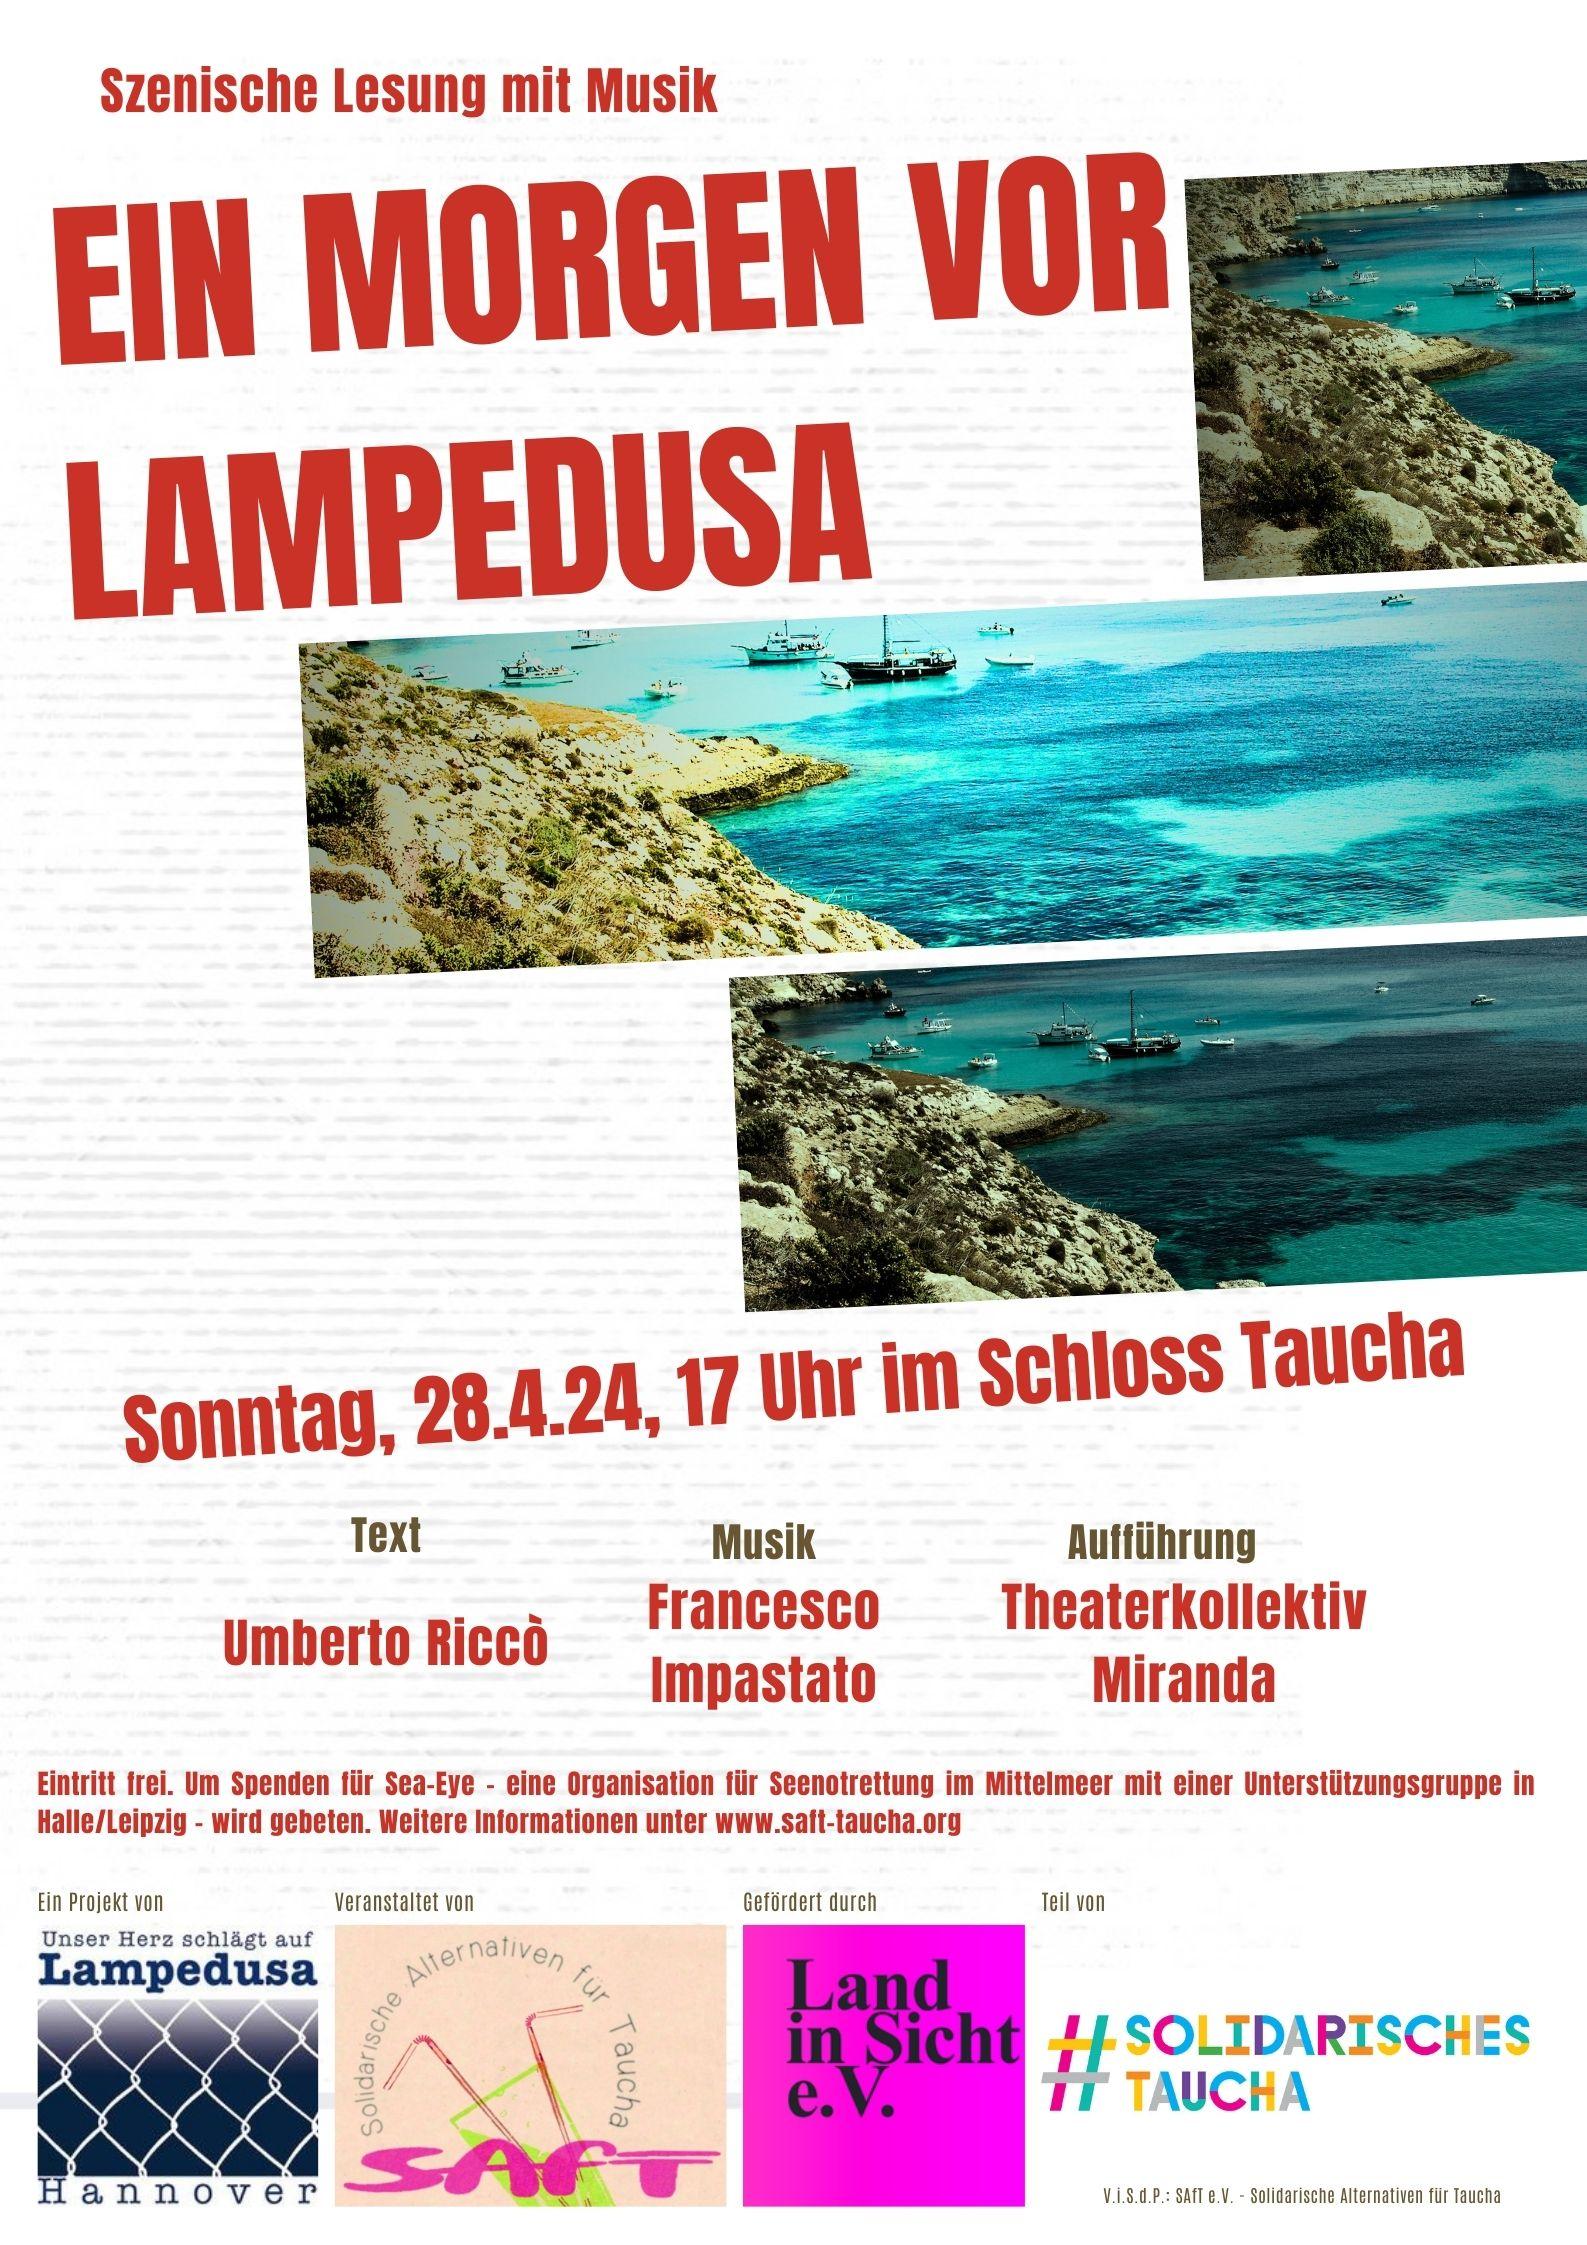 Szenische Lesung des Theaterkollektivs Miranda: „Ein Morgen vor Lampedusa“